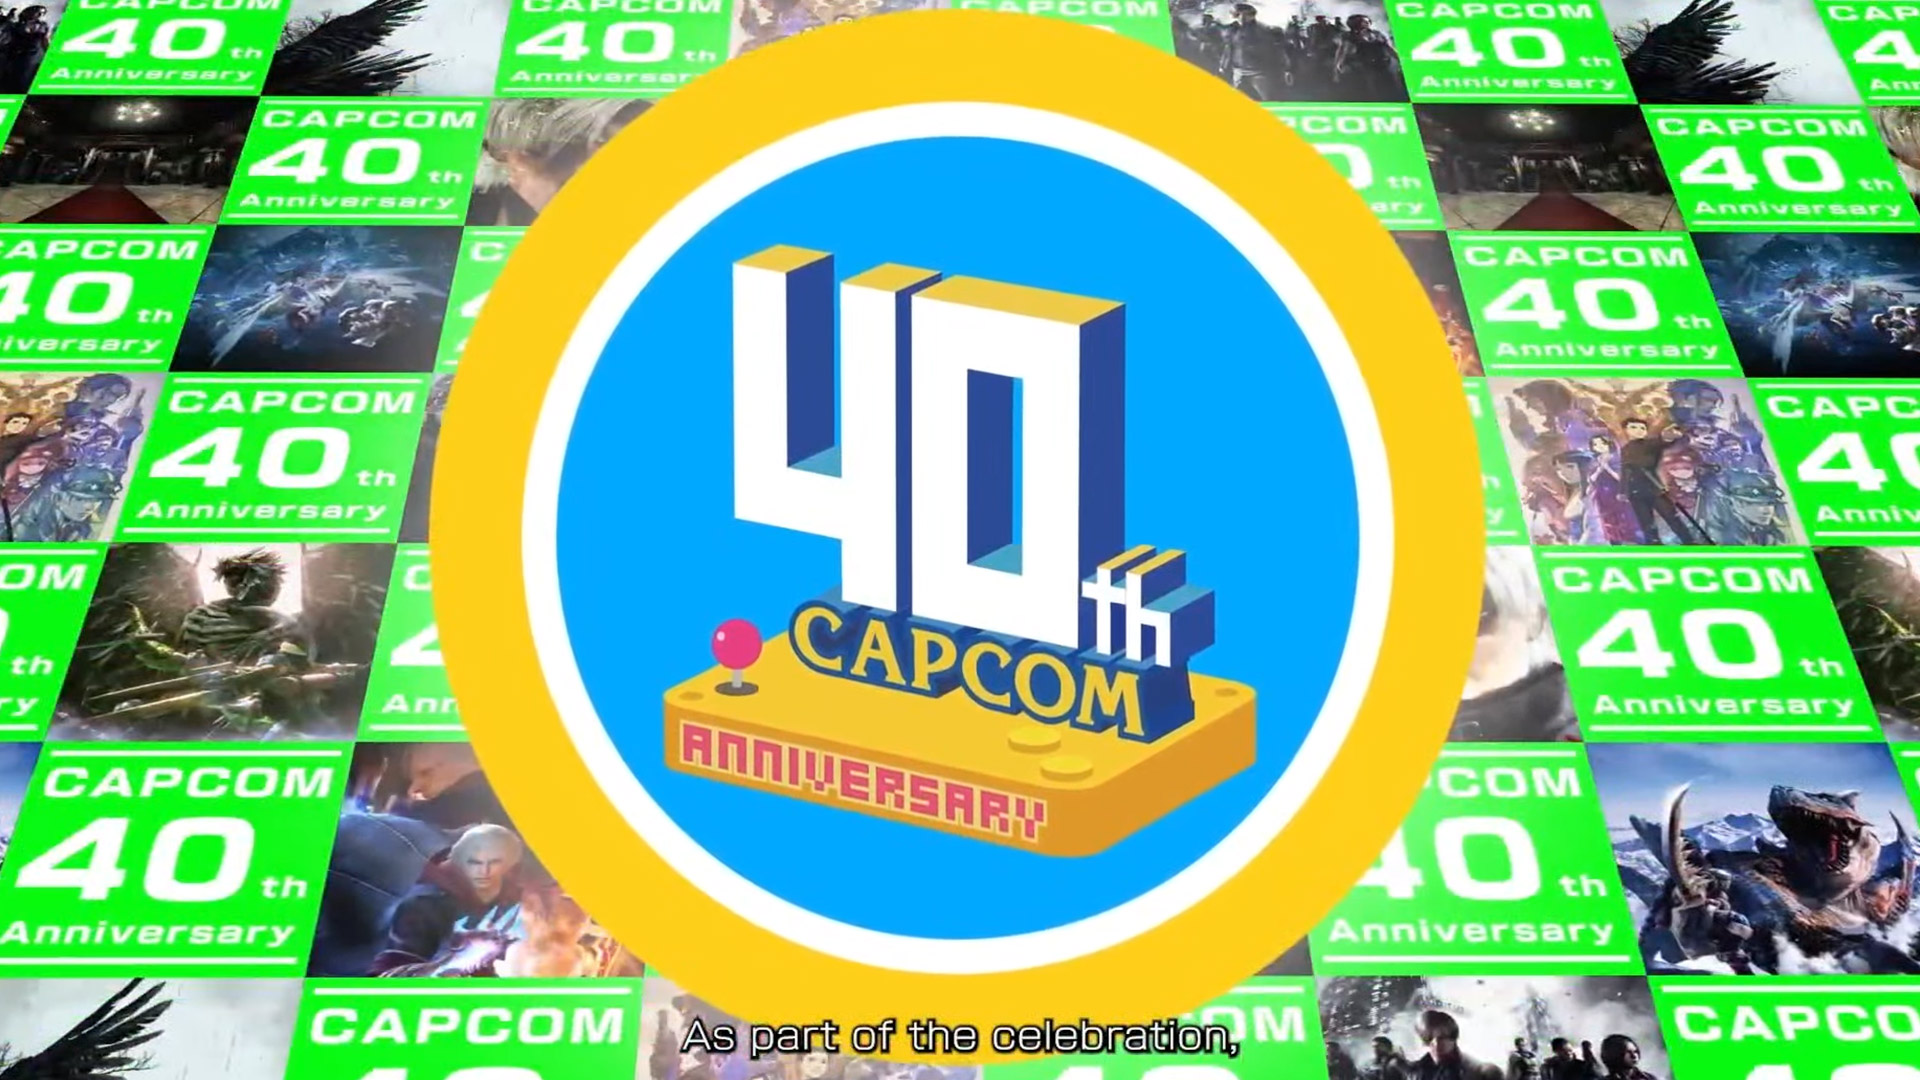 Capcom compie 40 anni! In onore di questo evento, ha lanciato un sito web con un museo e giochi retrò da giocare.